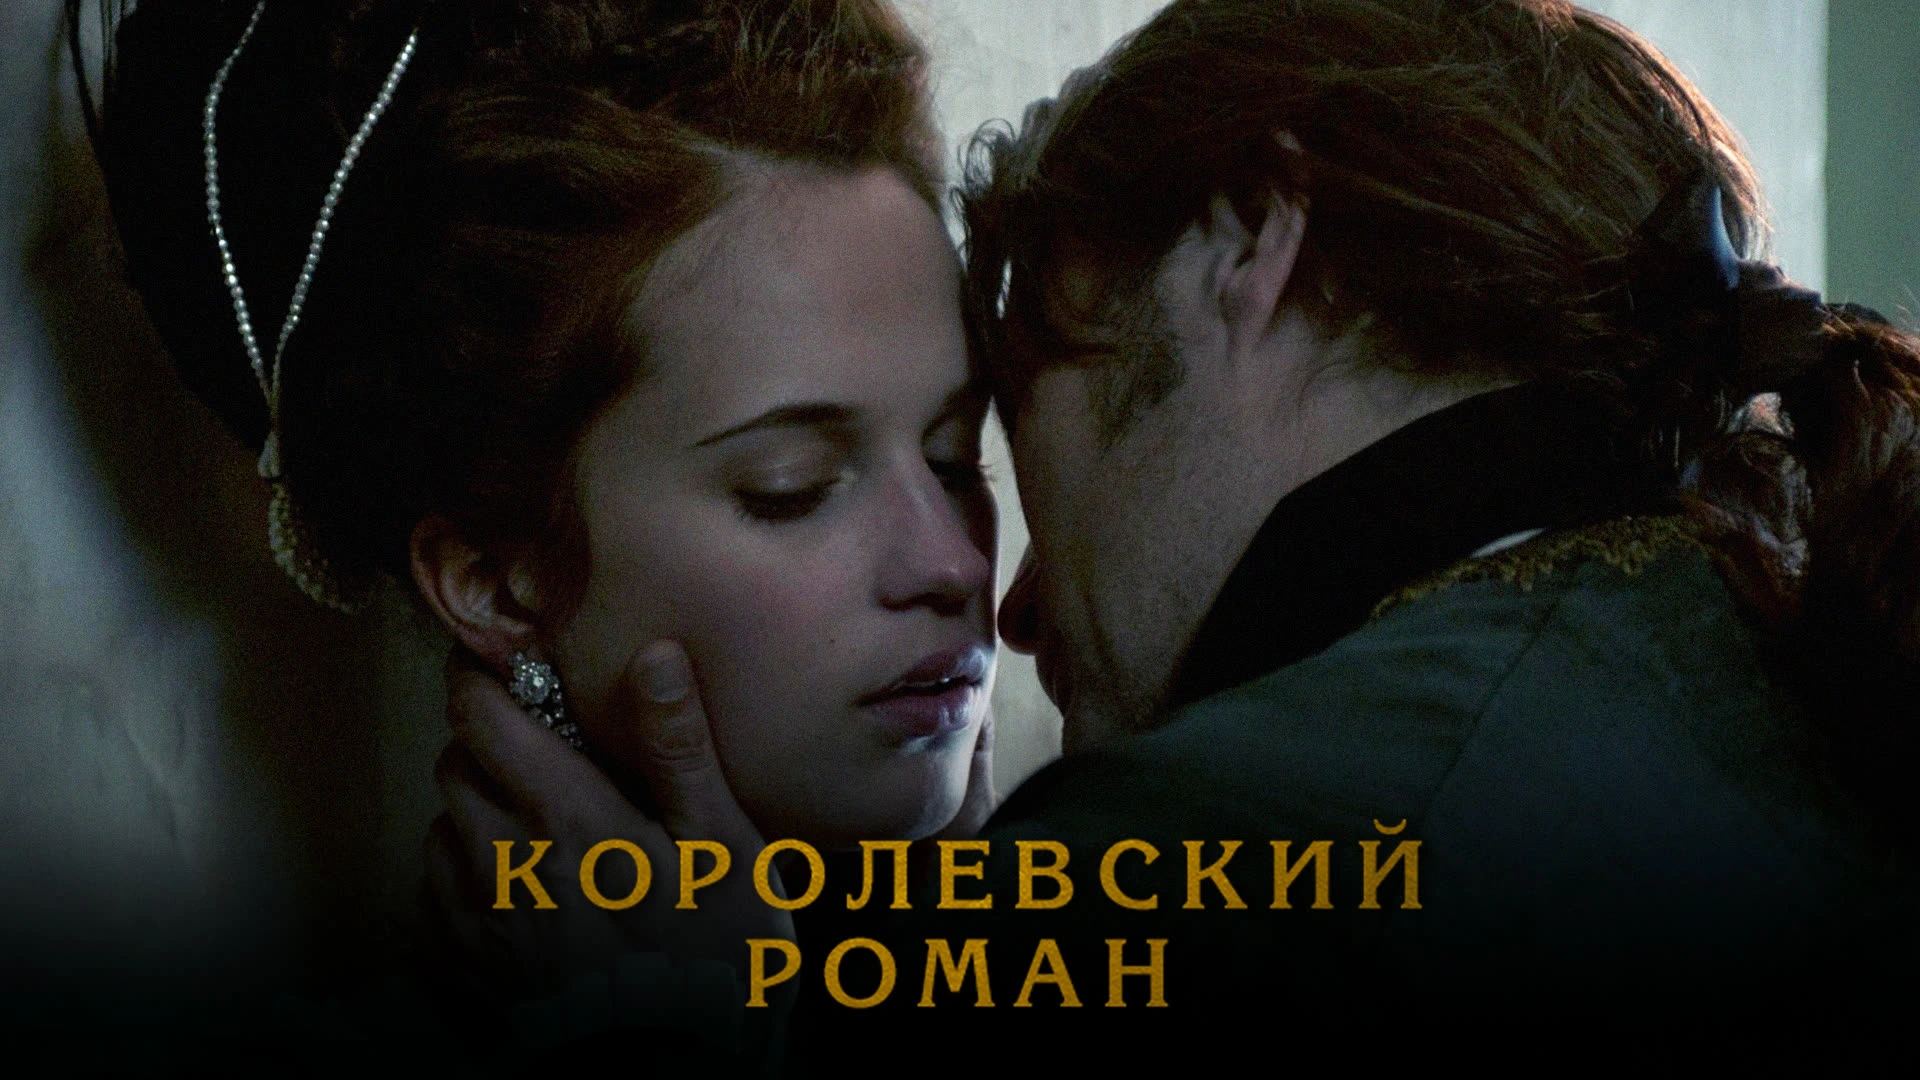 Российские военные фильмы про любовь - список лучших фильмов и сериалов